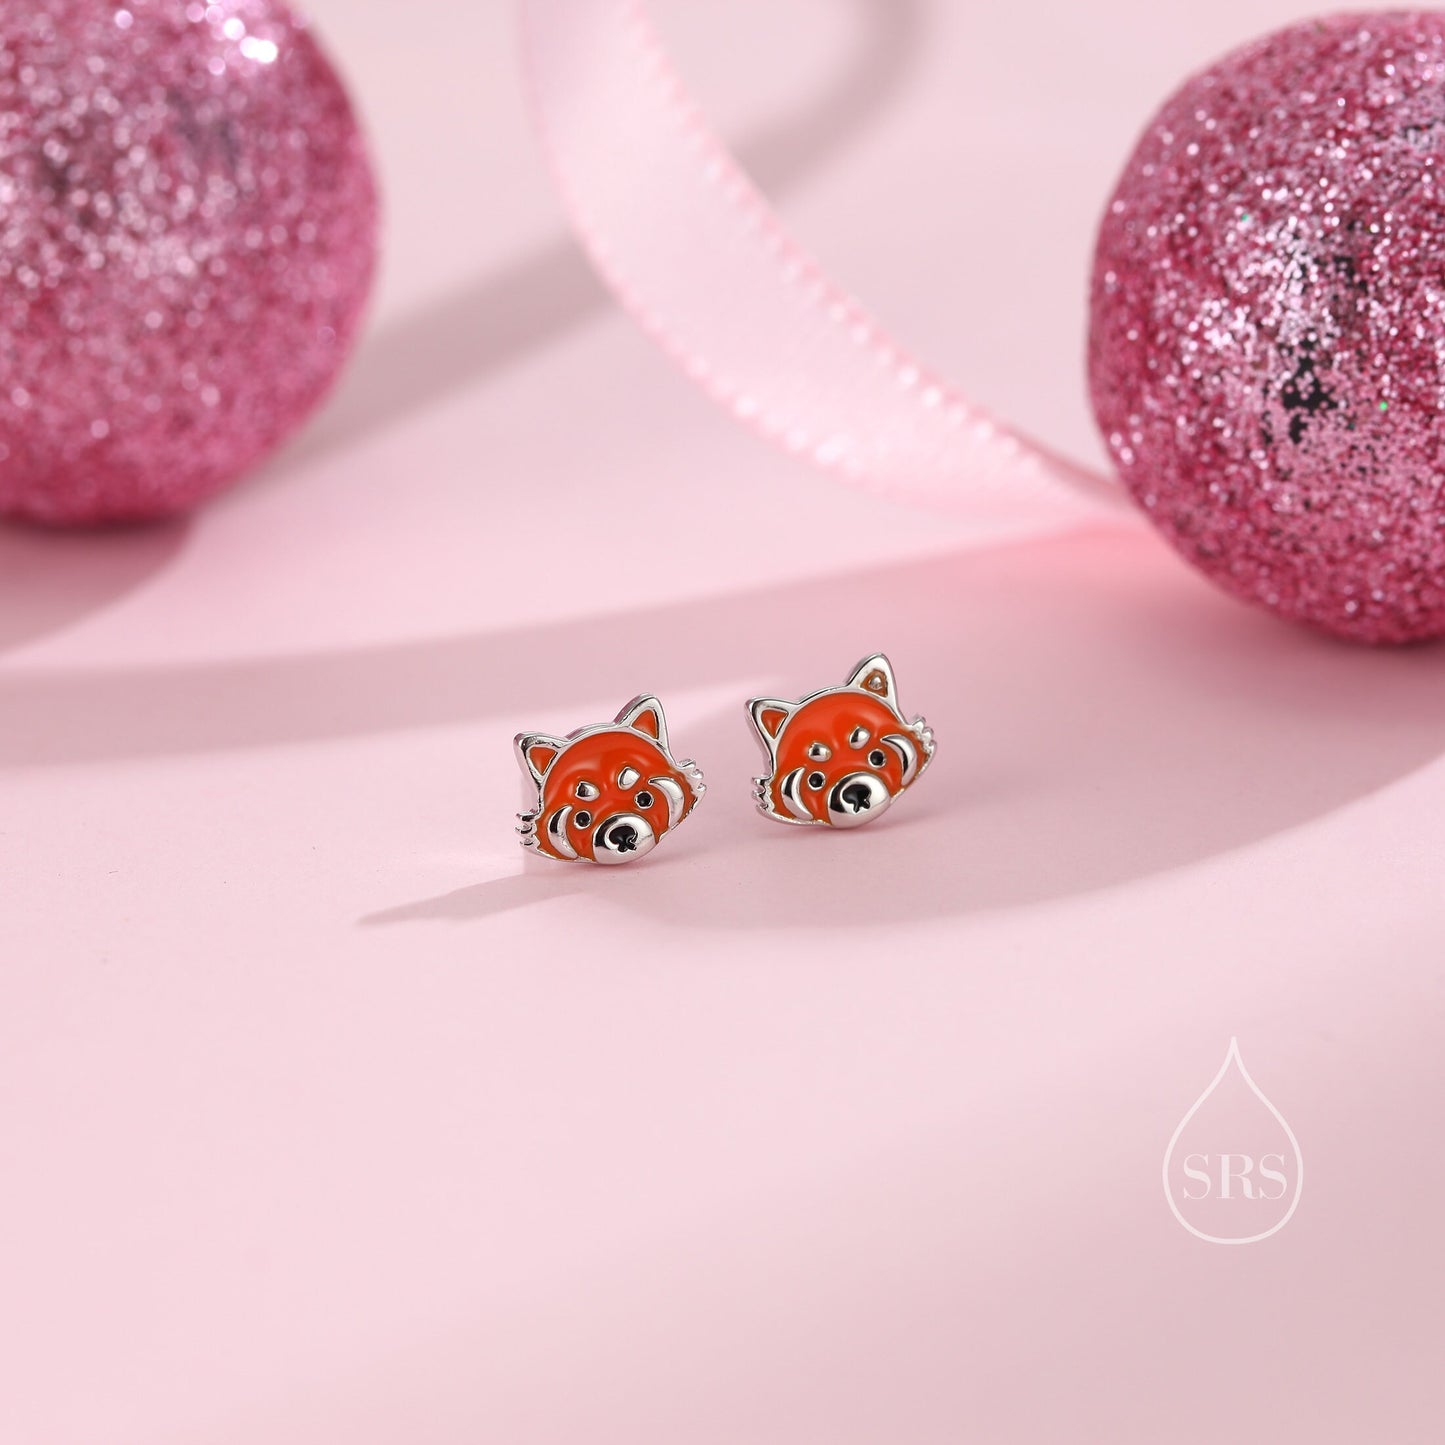 Enamel Red Panda Stud Earrings in Sterling Silver, Red Panda Stud, Red Panda Earrings, Panda Bear Earrings